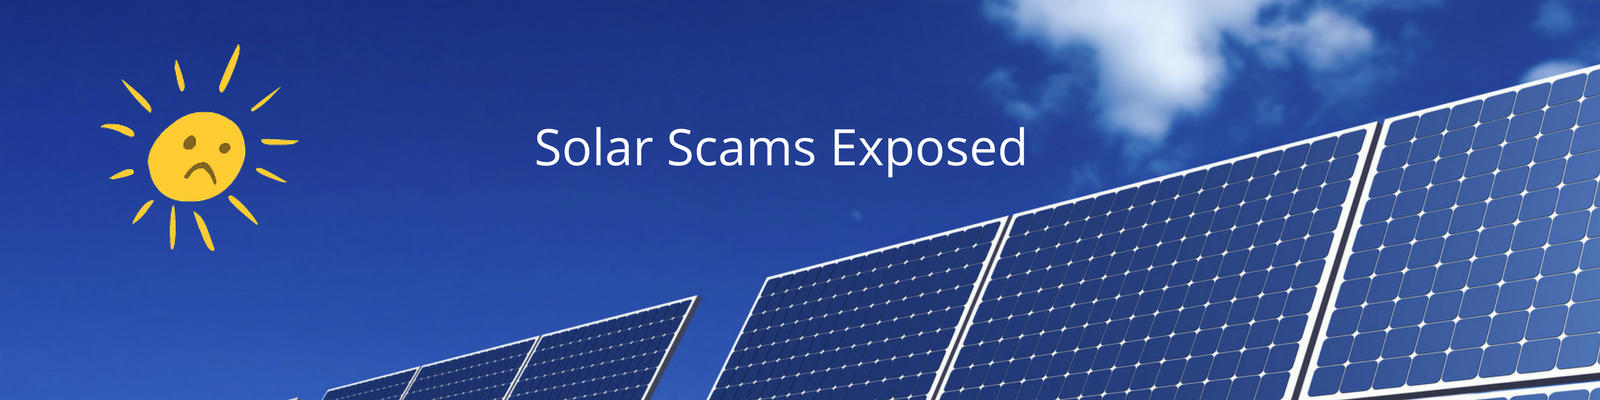 solar-scams